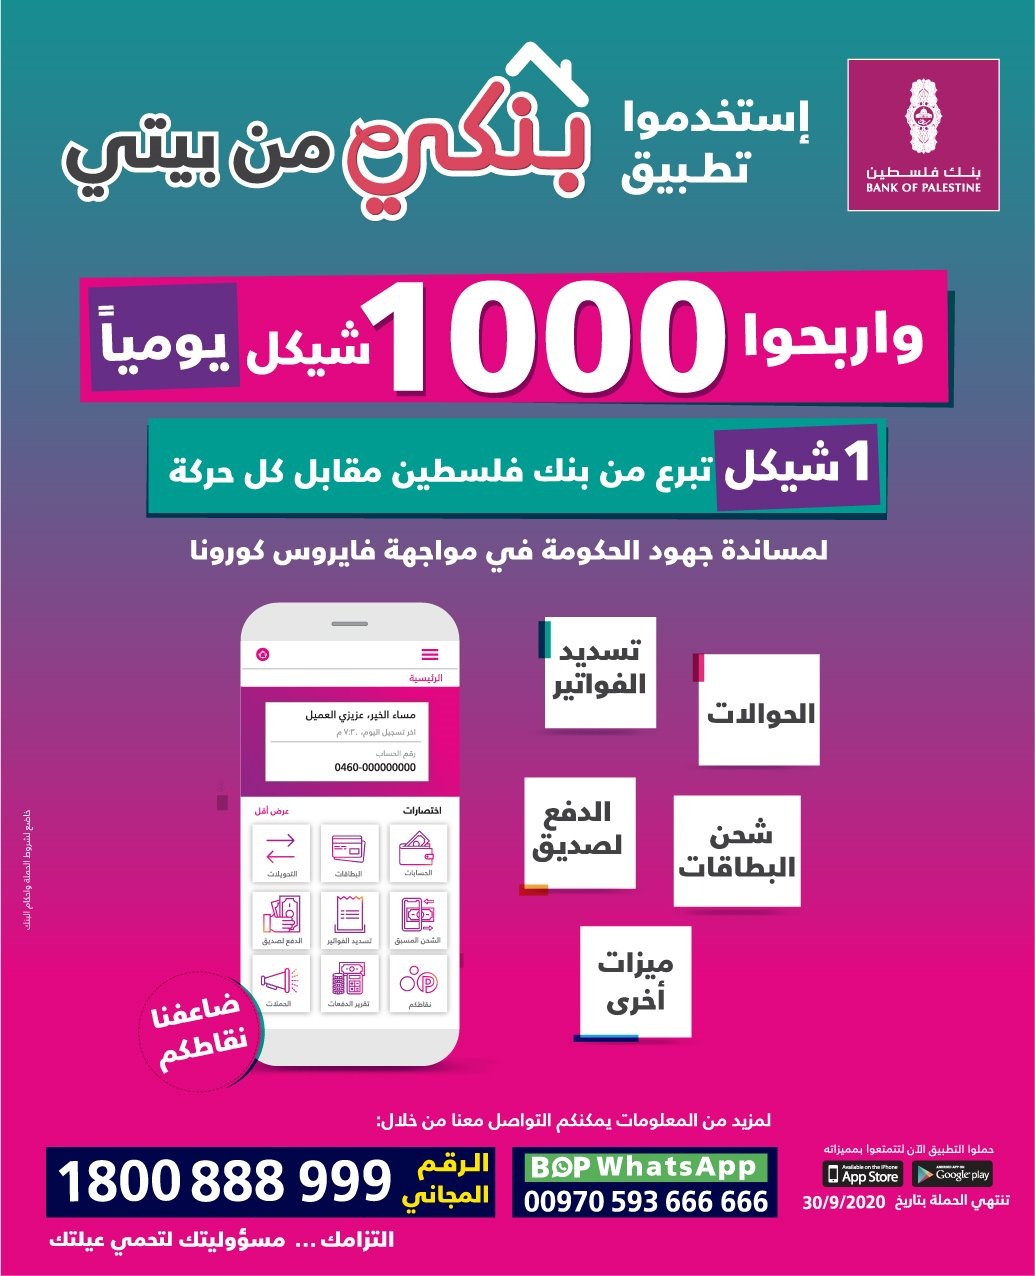 بنك فلسطين يطلق حملة تشجيعية للخدمات لإلكترونية بجائزة يومية قيمتها 1000 شيكل ويعتمد مجموعة من الخطوات للتسهيل على العملاء في ظل حالة الطوارئ